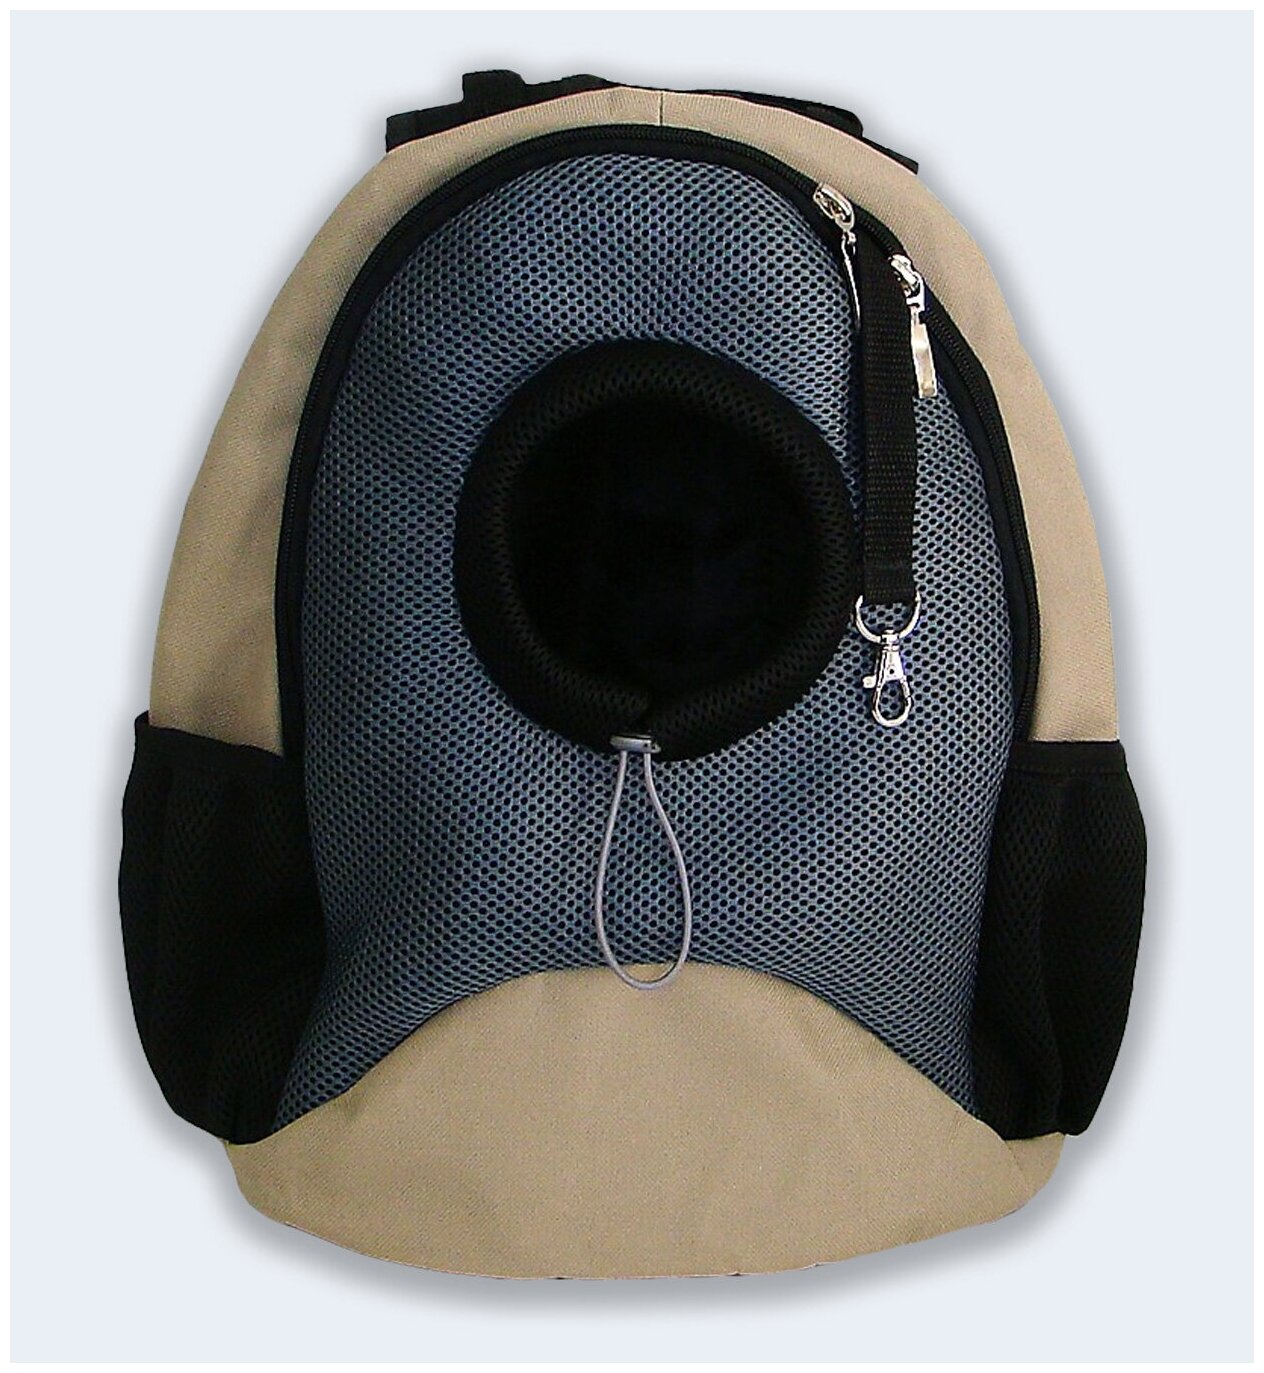 Рюкзак для собак и кошек Melenni Эконом M бежевый/серая сетка, 41x38x22, см; Вес: 600 гр.